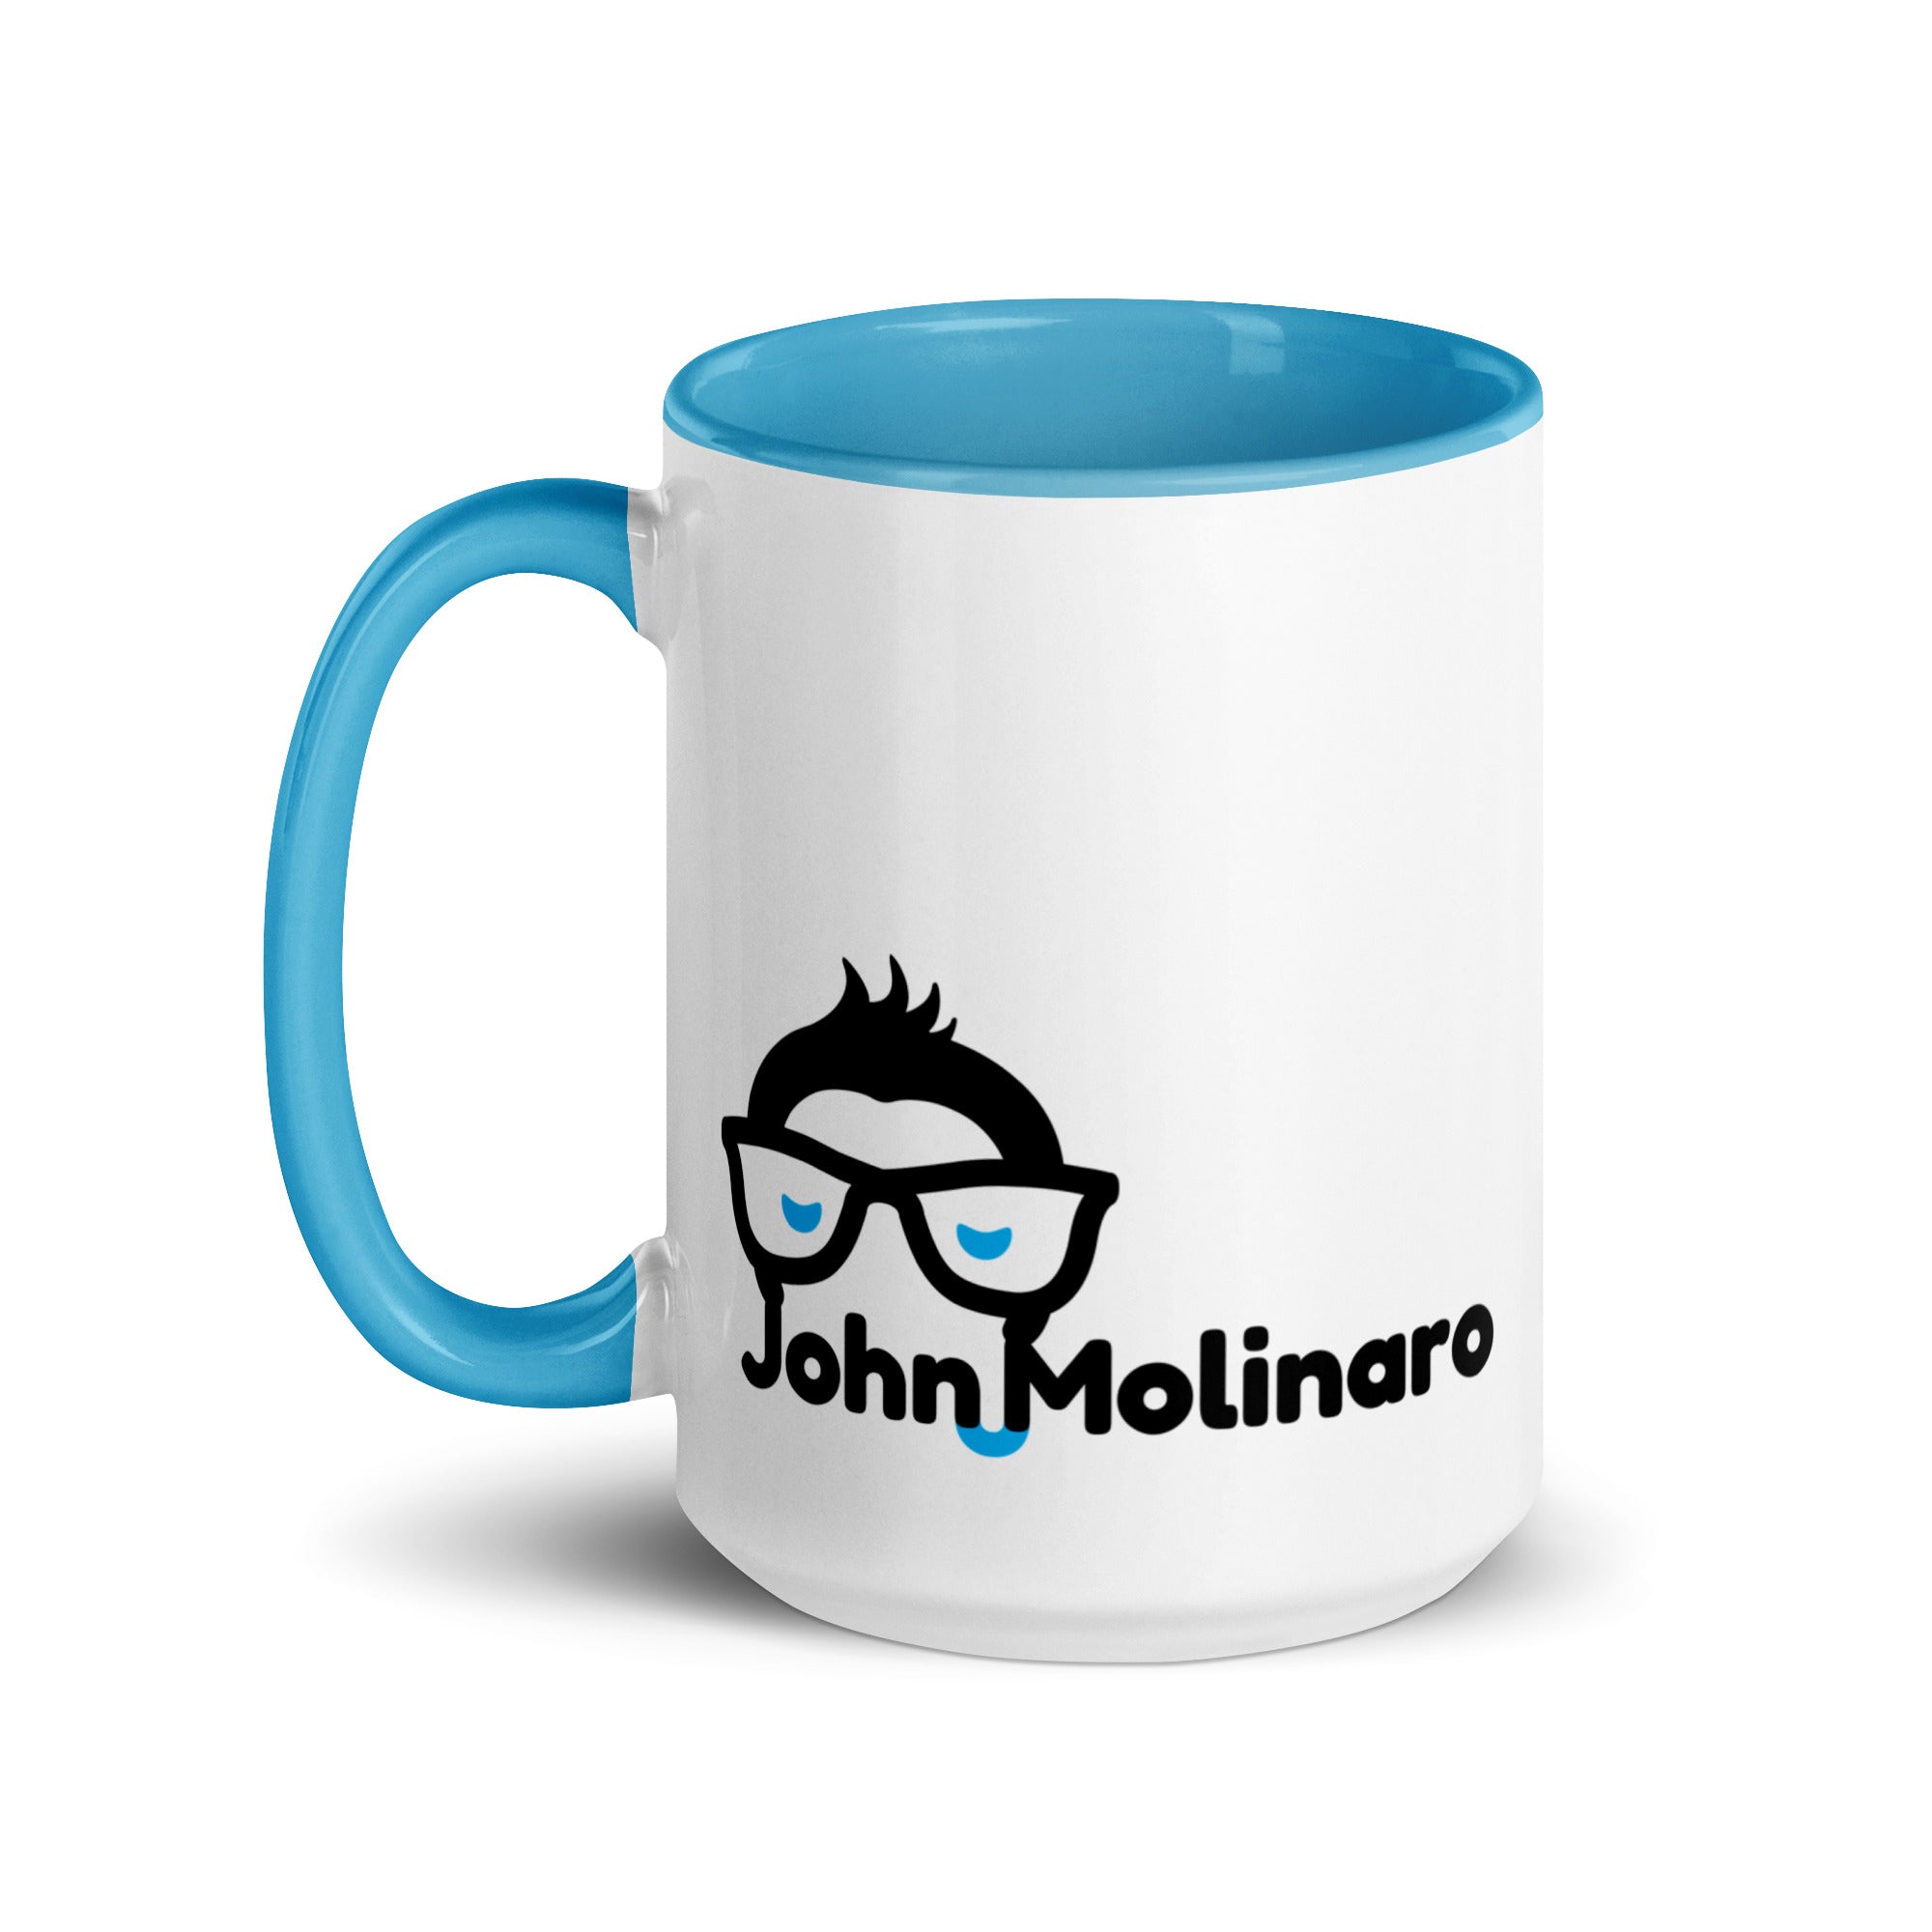 John Molinaro - Mug